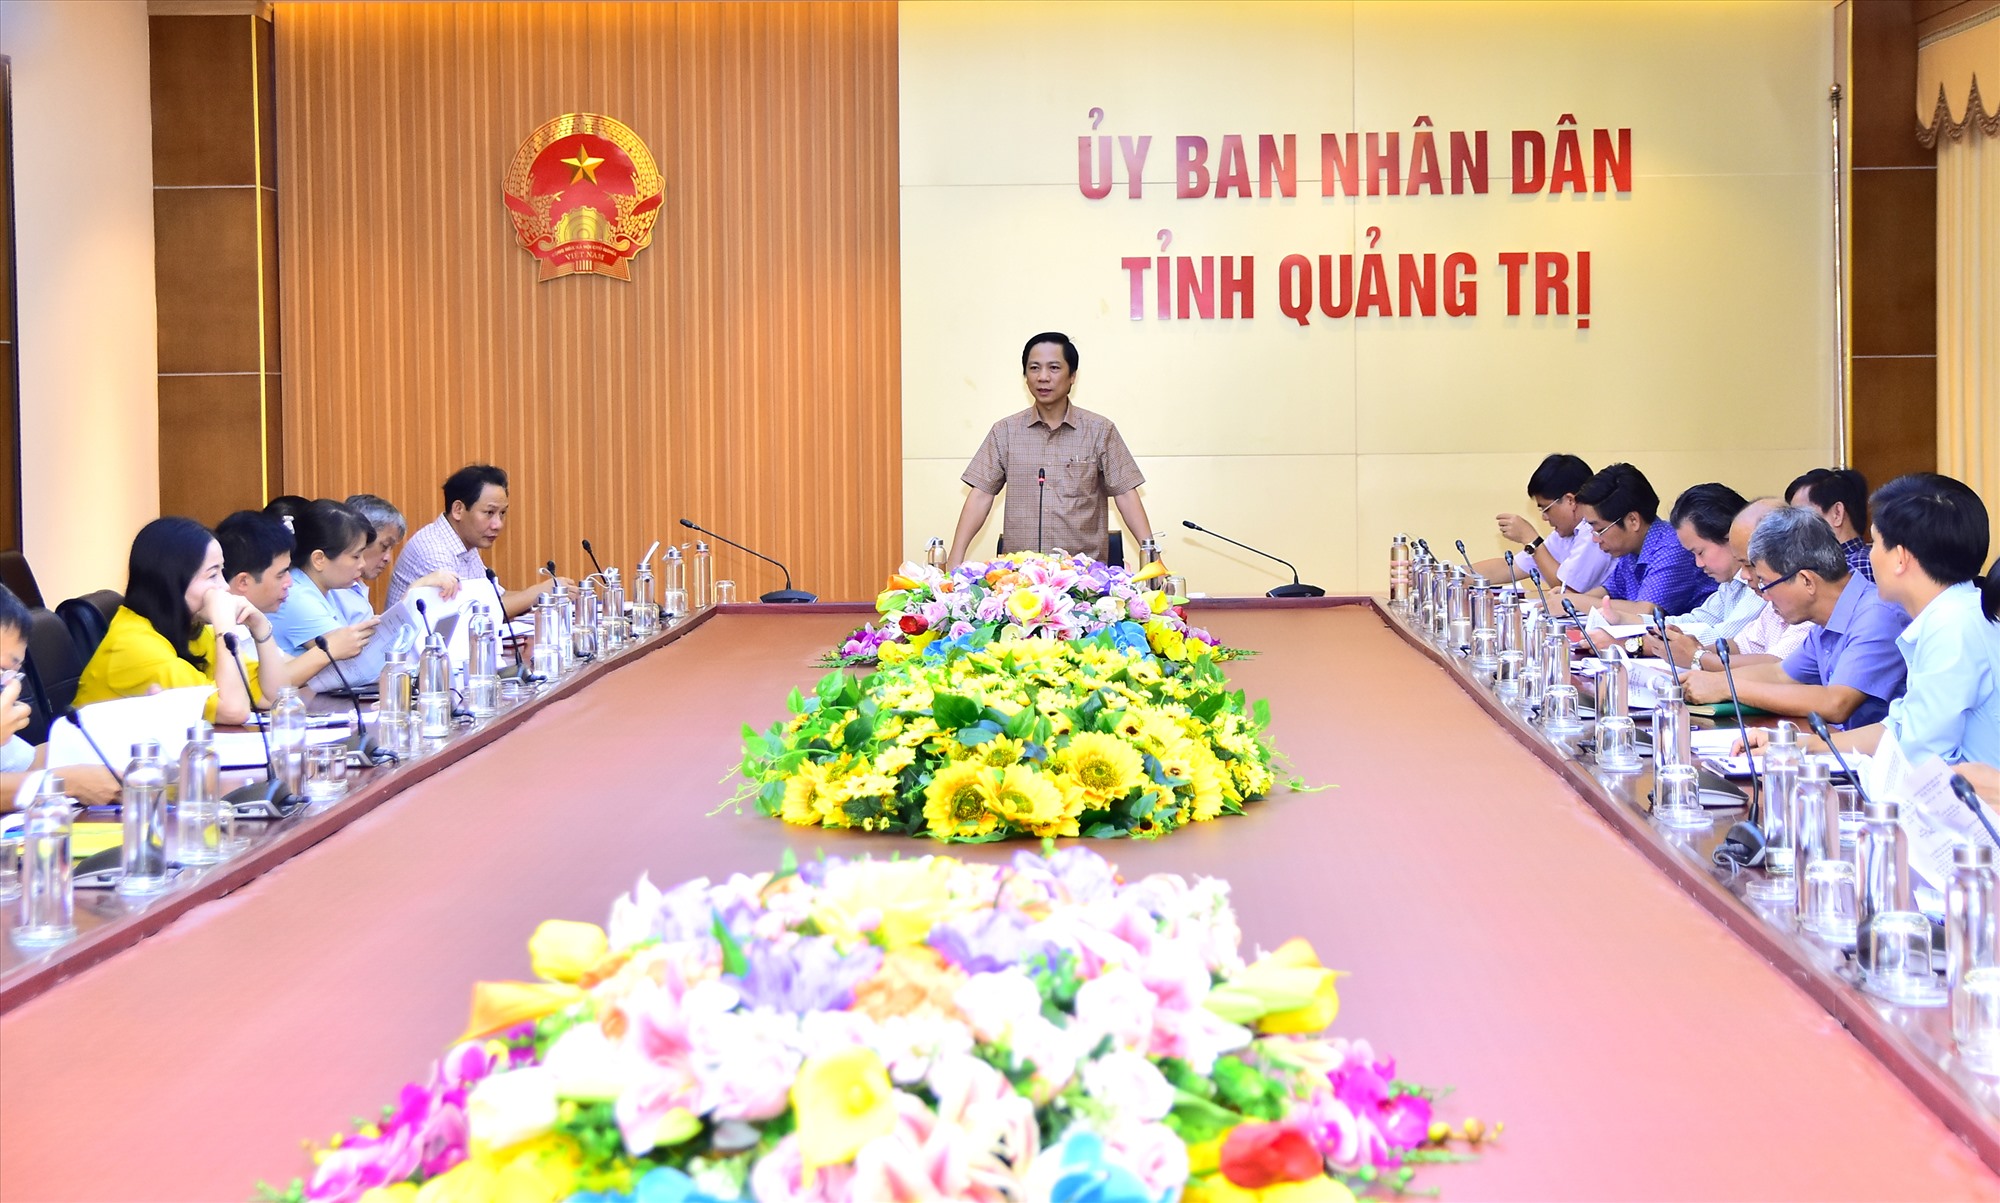 Phó Chủ tịch UBND tỉnh Hoàng Nam yêu cầu các sở, ngành, địa phương tiếp tục hành động quyết liệt hơn theo phương châm chỉ đạo của lãnh đạo tỉnh về phát triển du lịch - Ảnh: Trần Tuyền